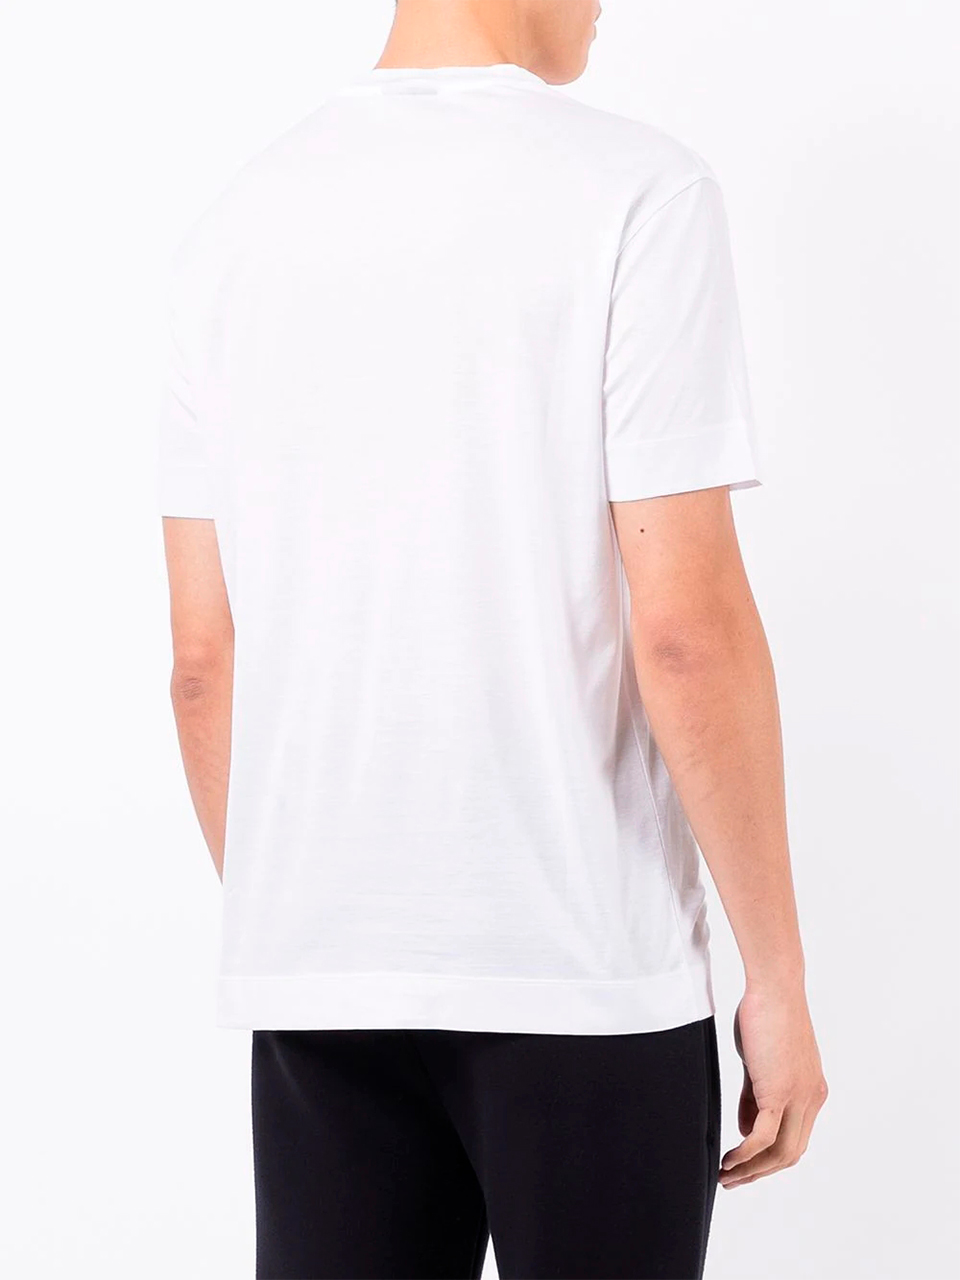 Imagem de: Camiseta Emporio Armani Branca com Estampa Preta Pequena